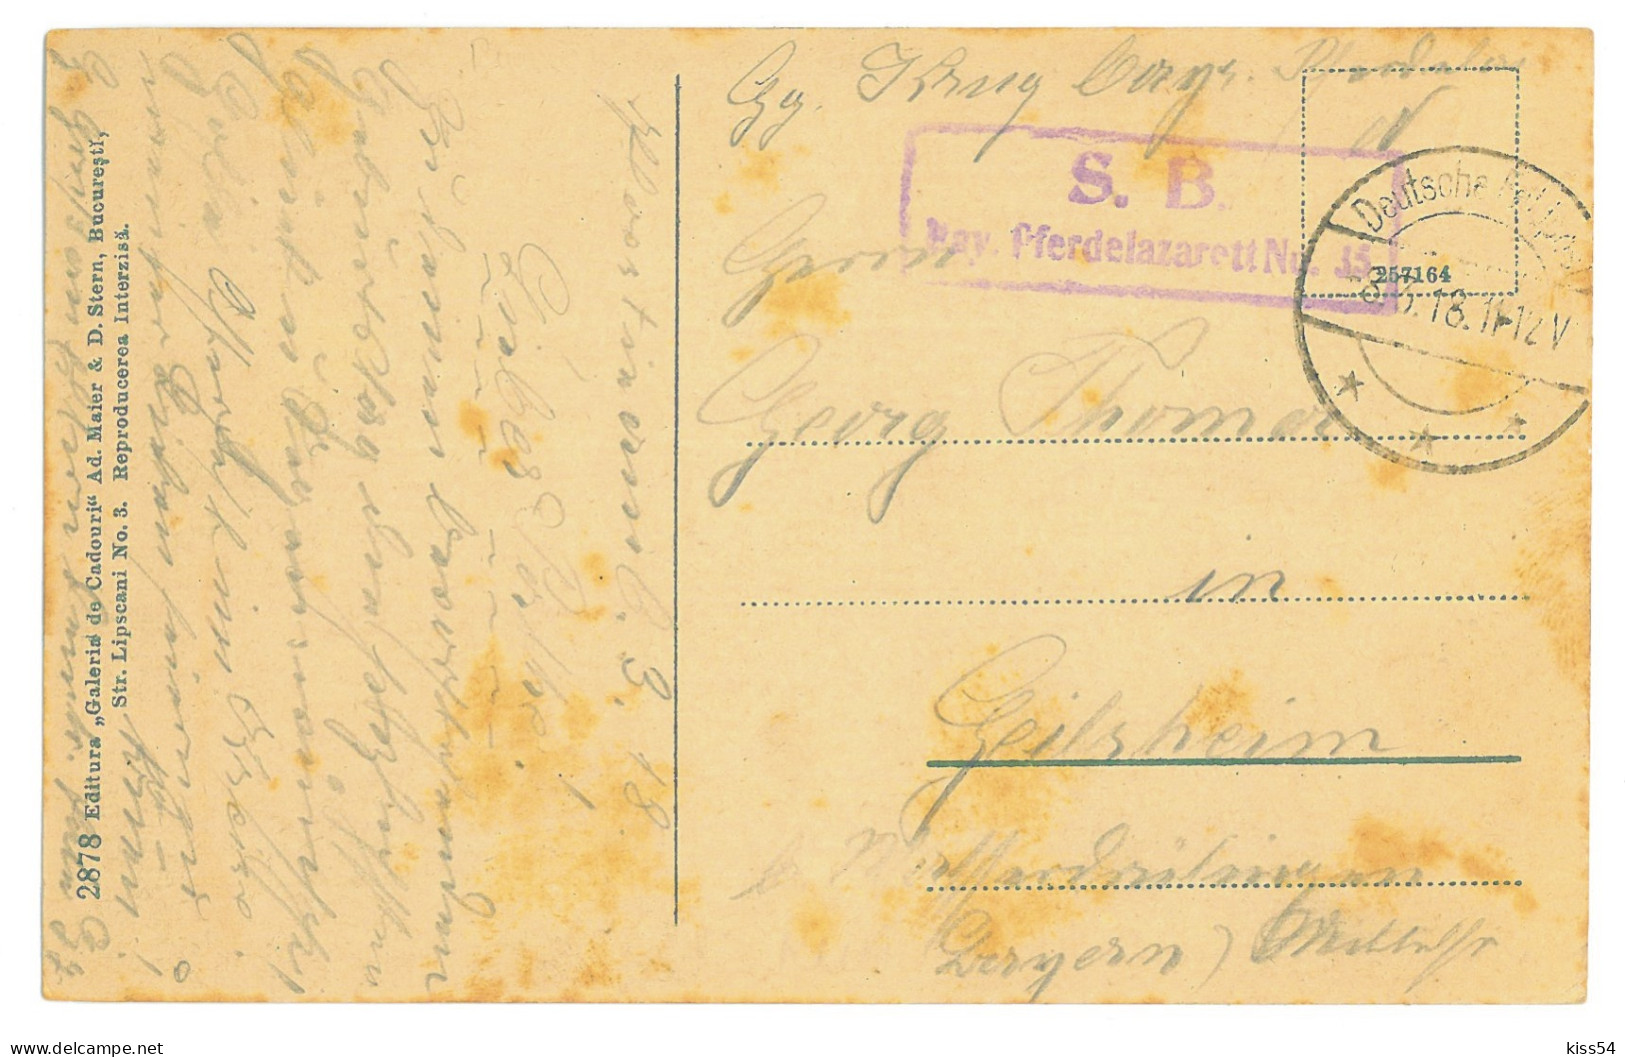 RO 77 - 16502 PLOIESTI, Market, Romania - Old Postcard, CENSOR - Used - 1918 - Roemenië